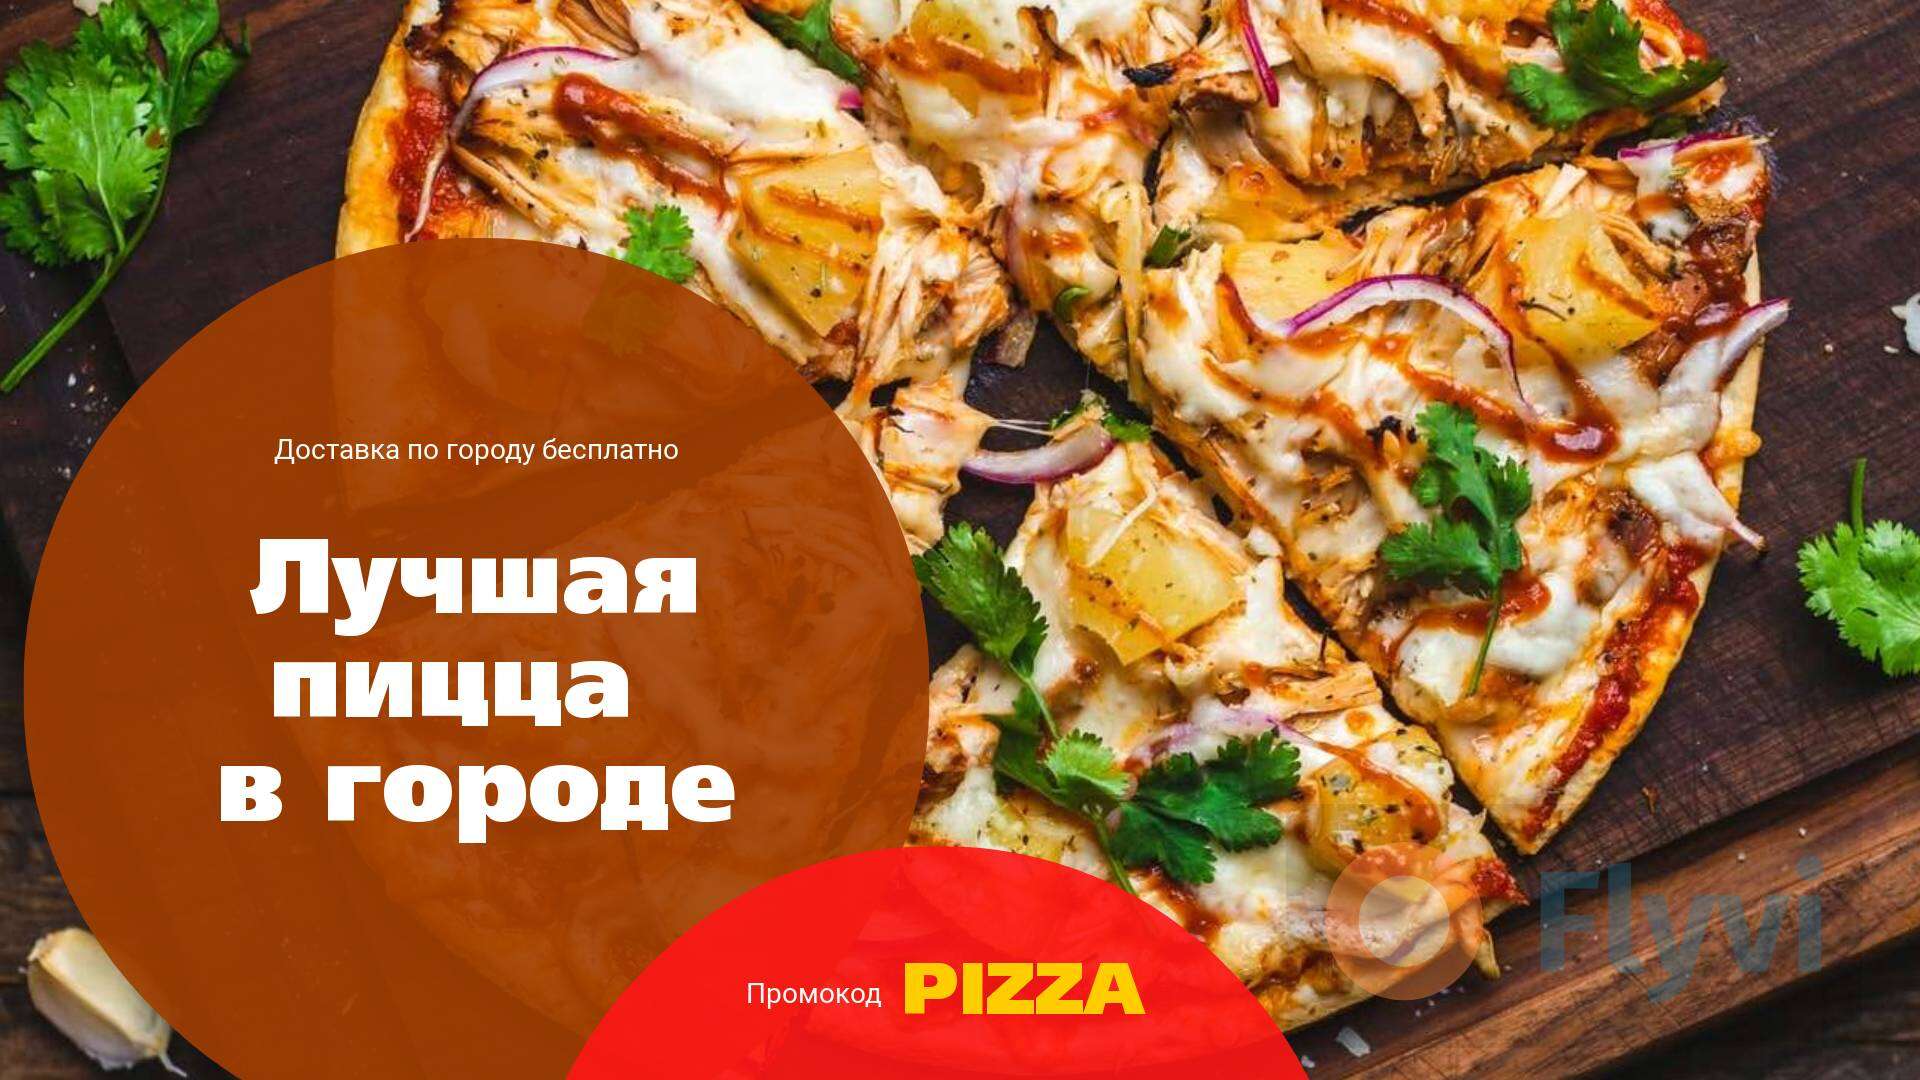 Ароматная пицца с аппетитной начинкой на деревянной доске в готовой публикации для соцсетей